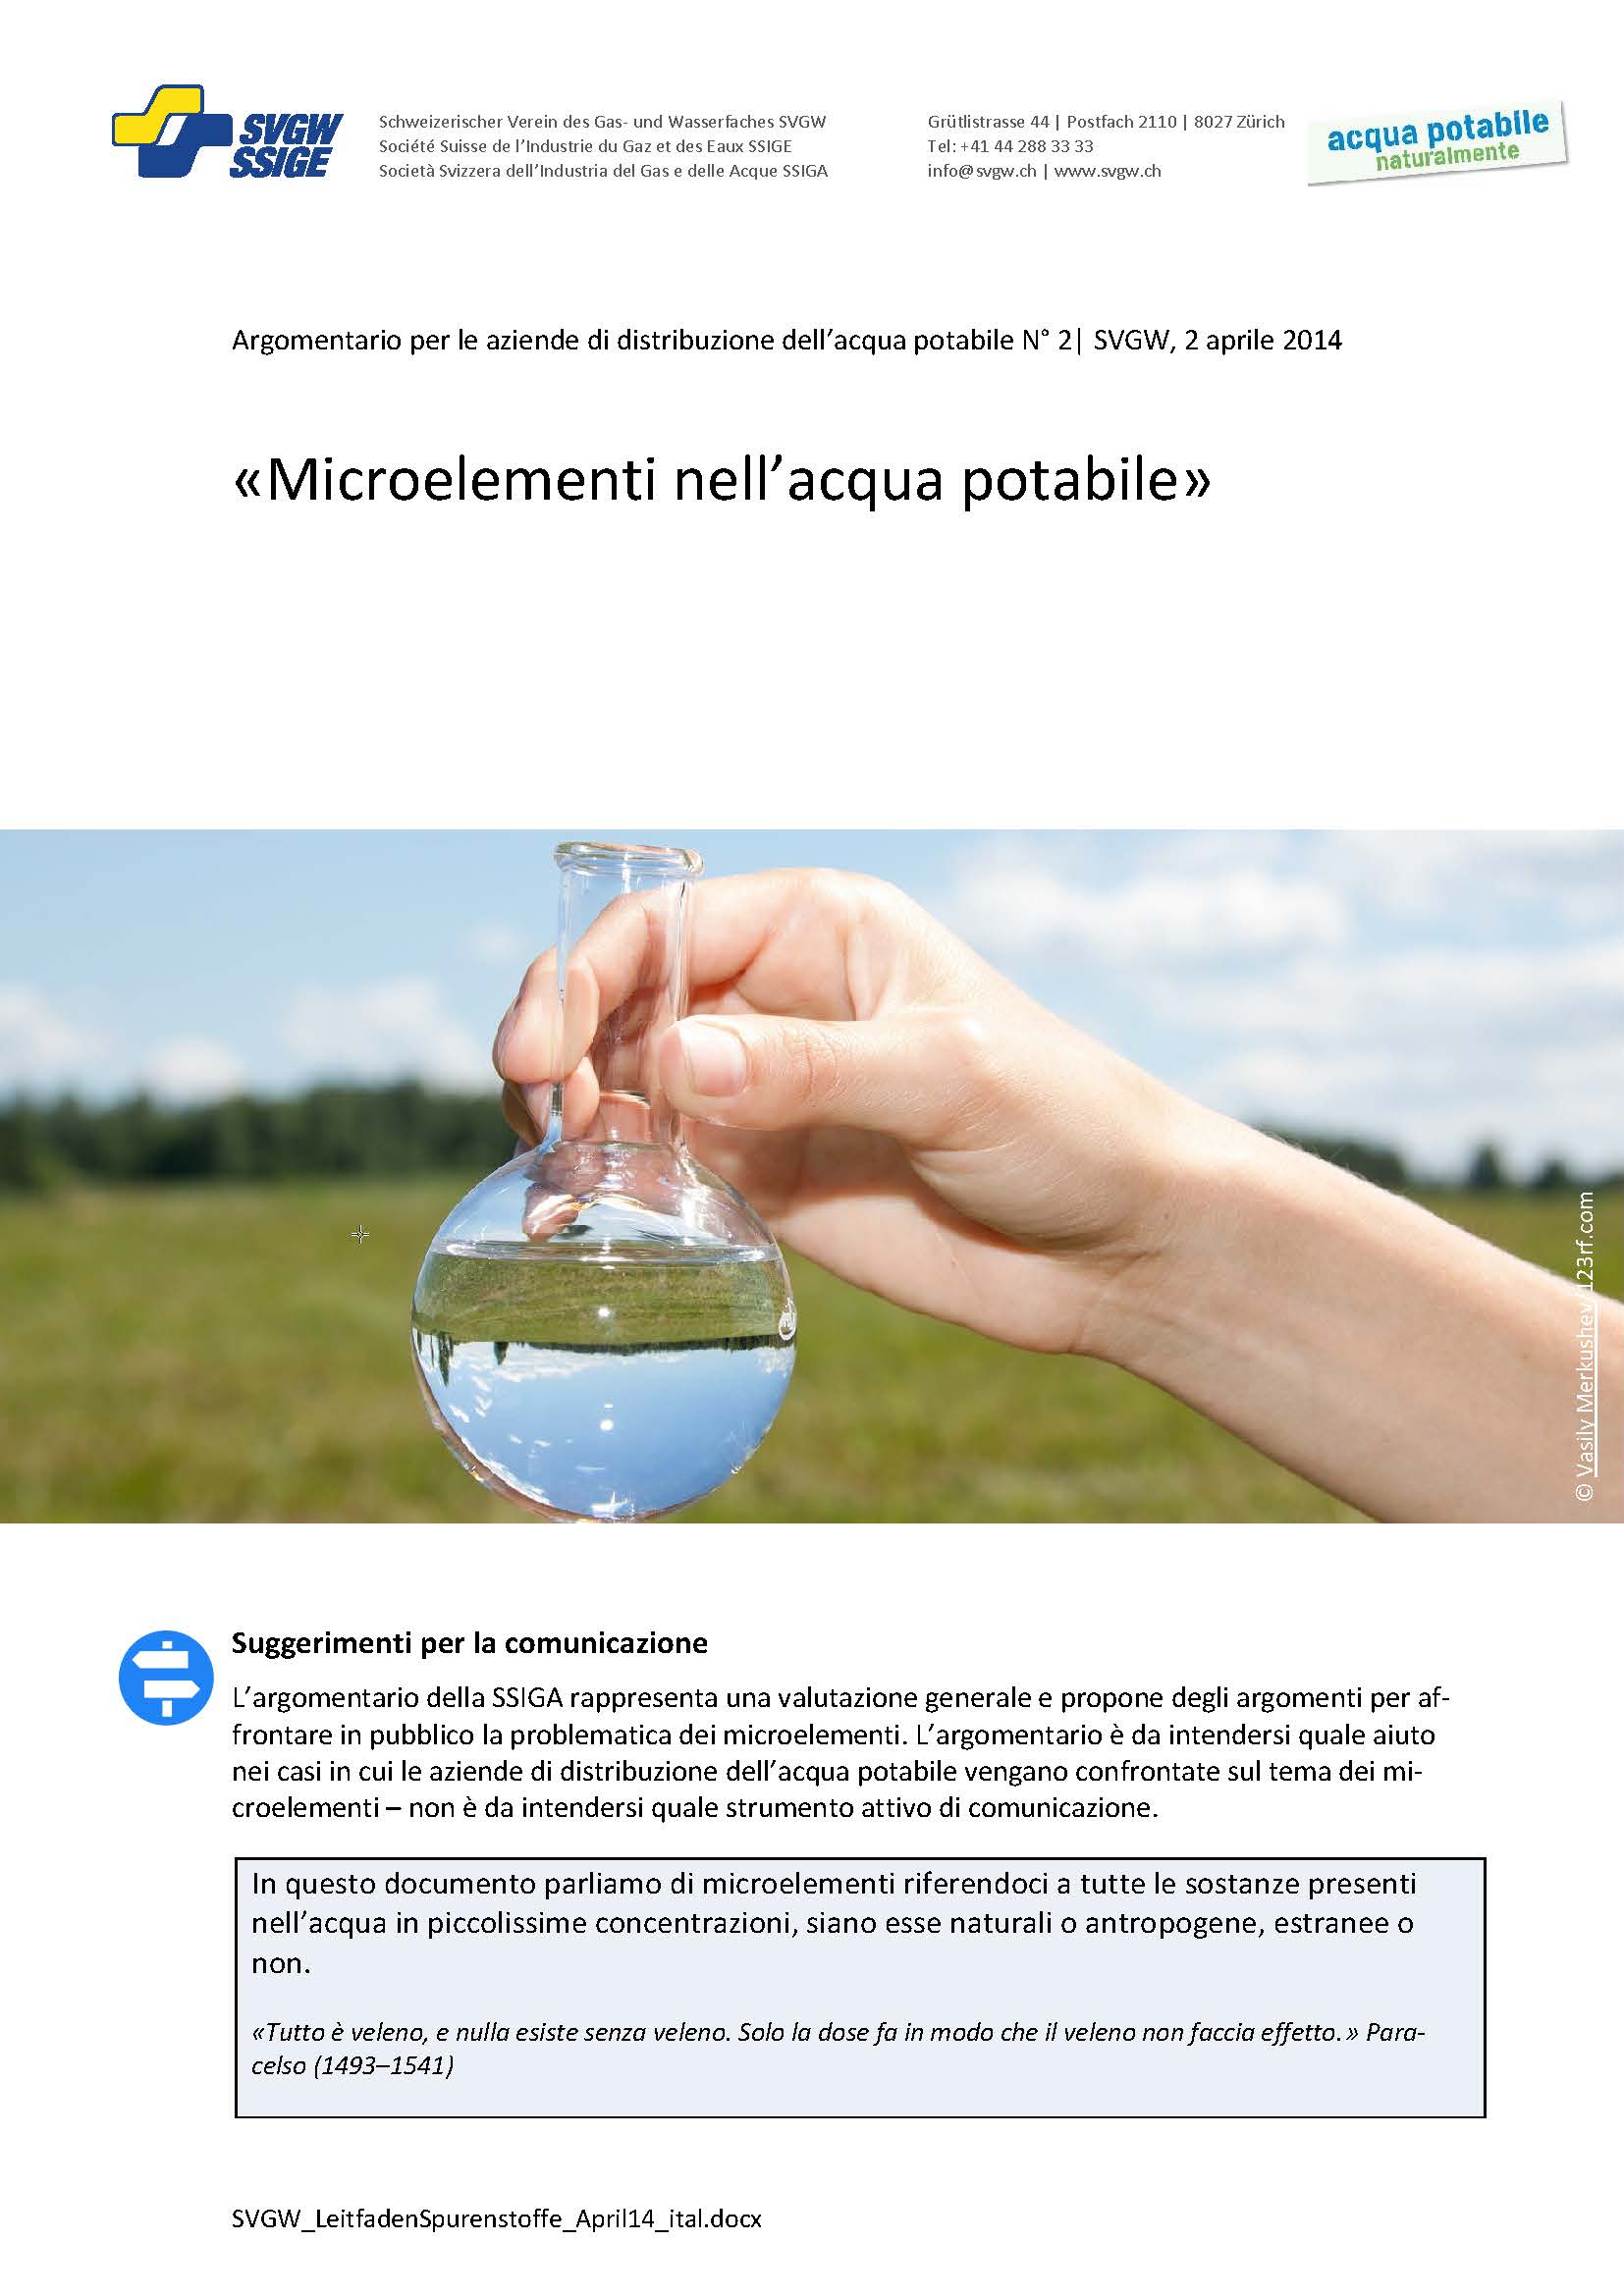 Argomentazione: «Microelementi nell'acqua potabile»